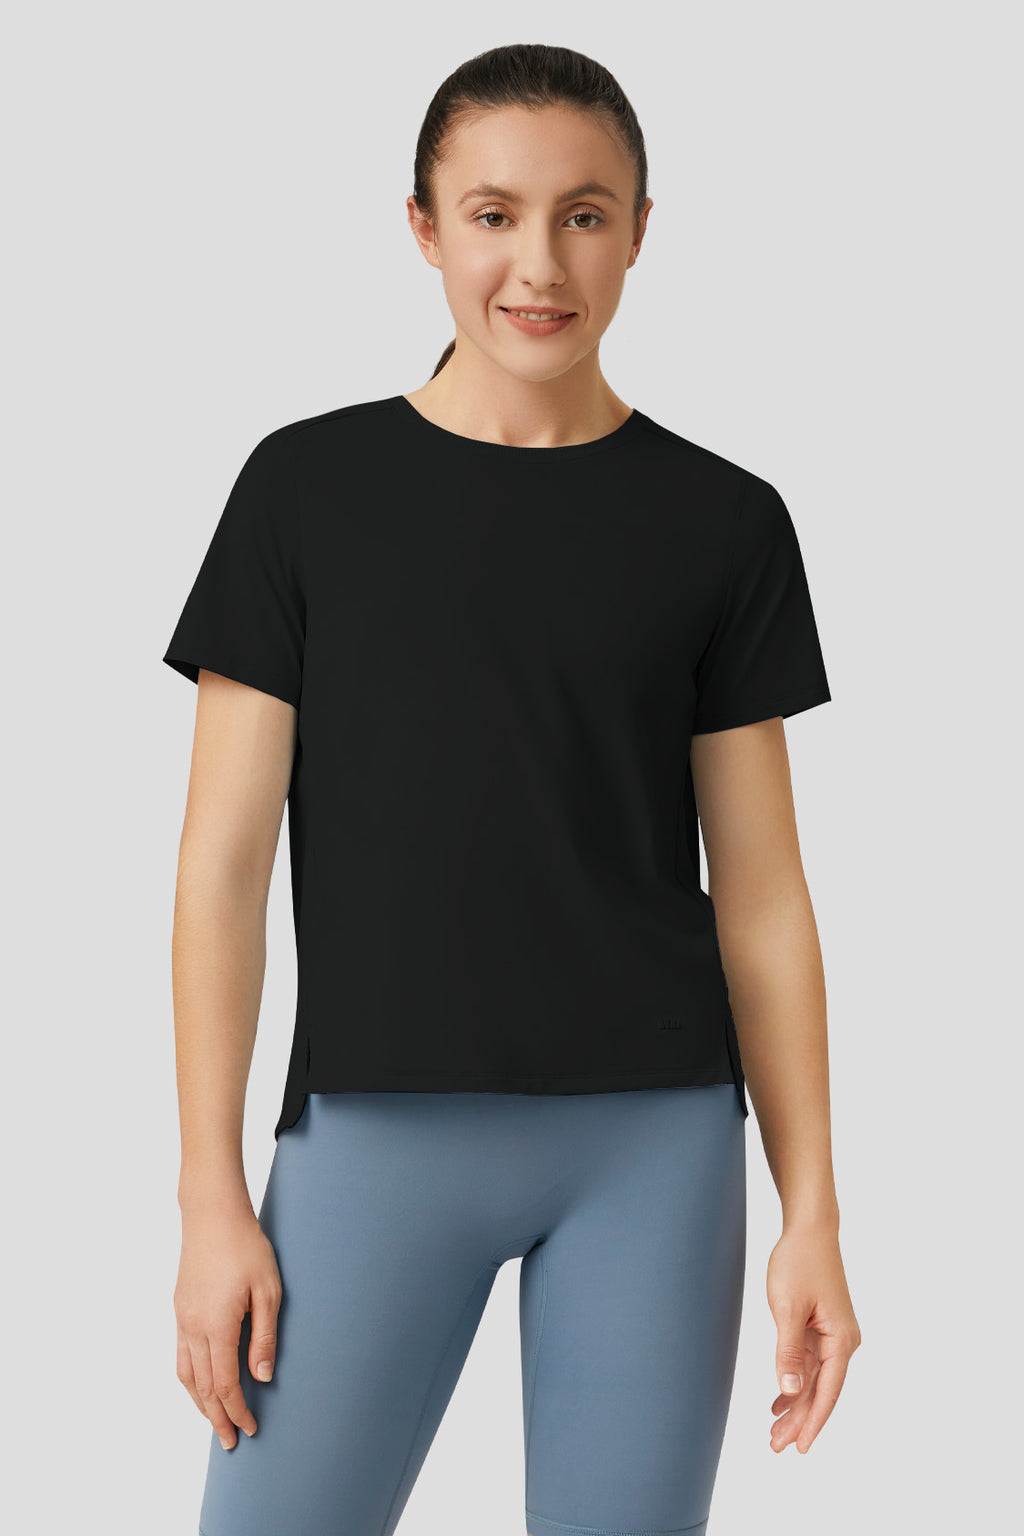 Binu - Women's Cooling T-Shirt UPF50+